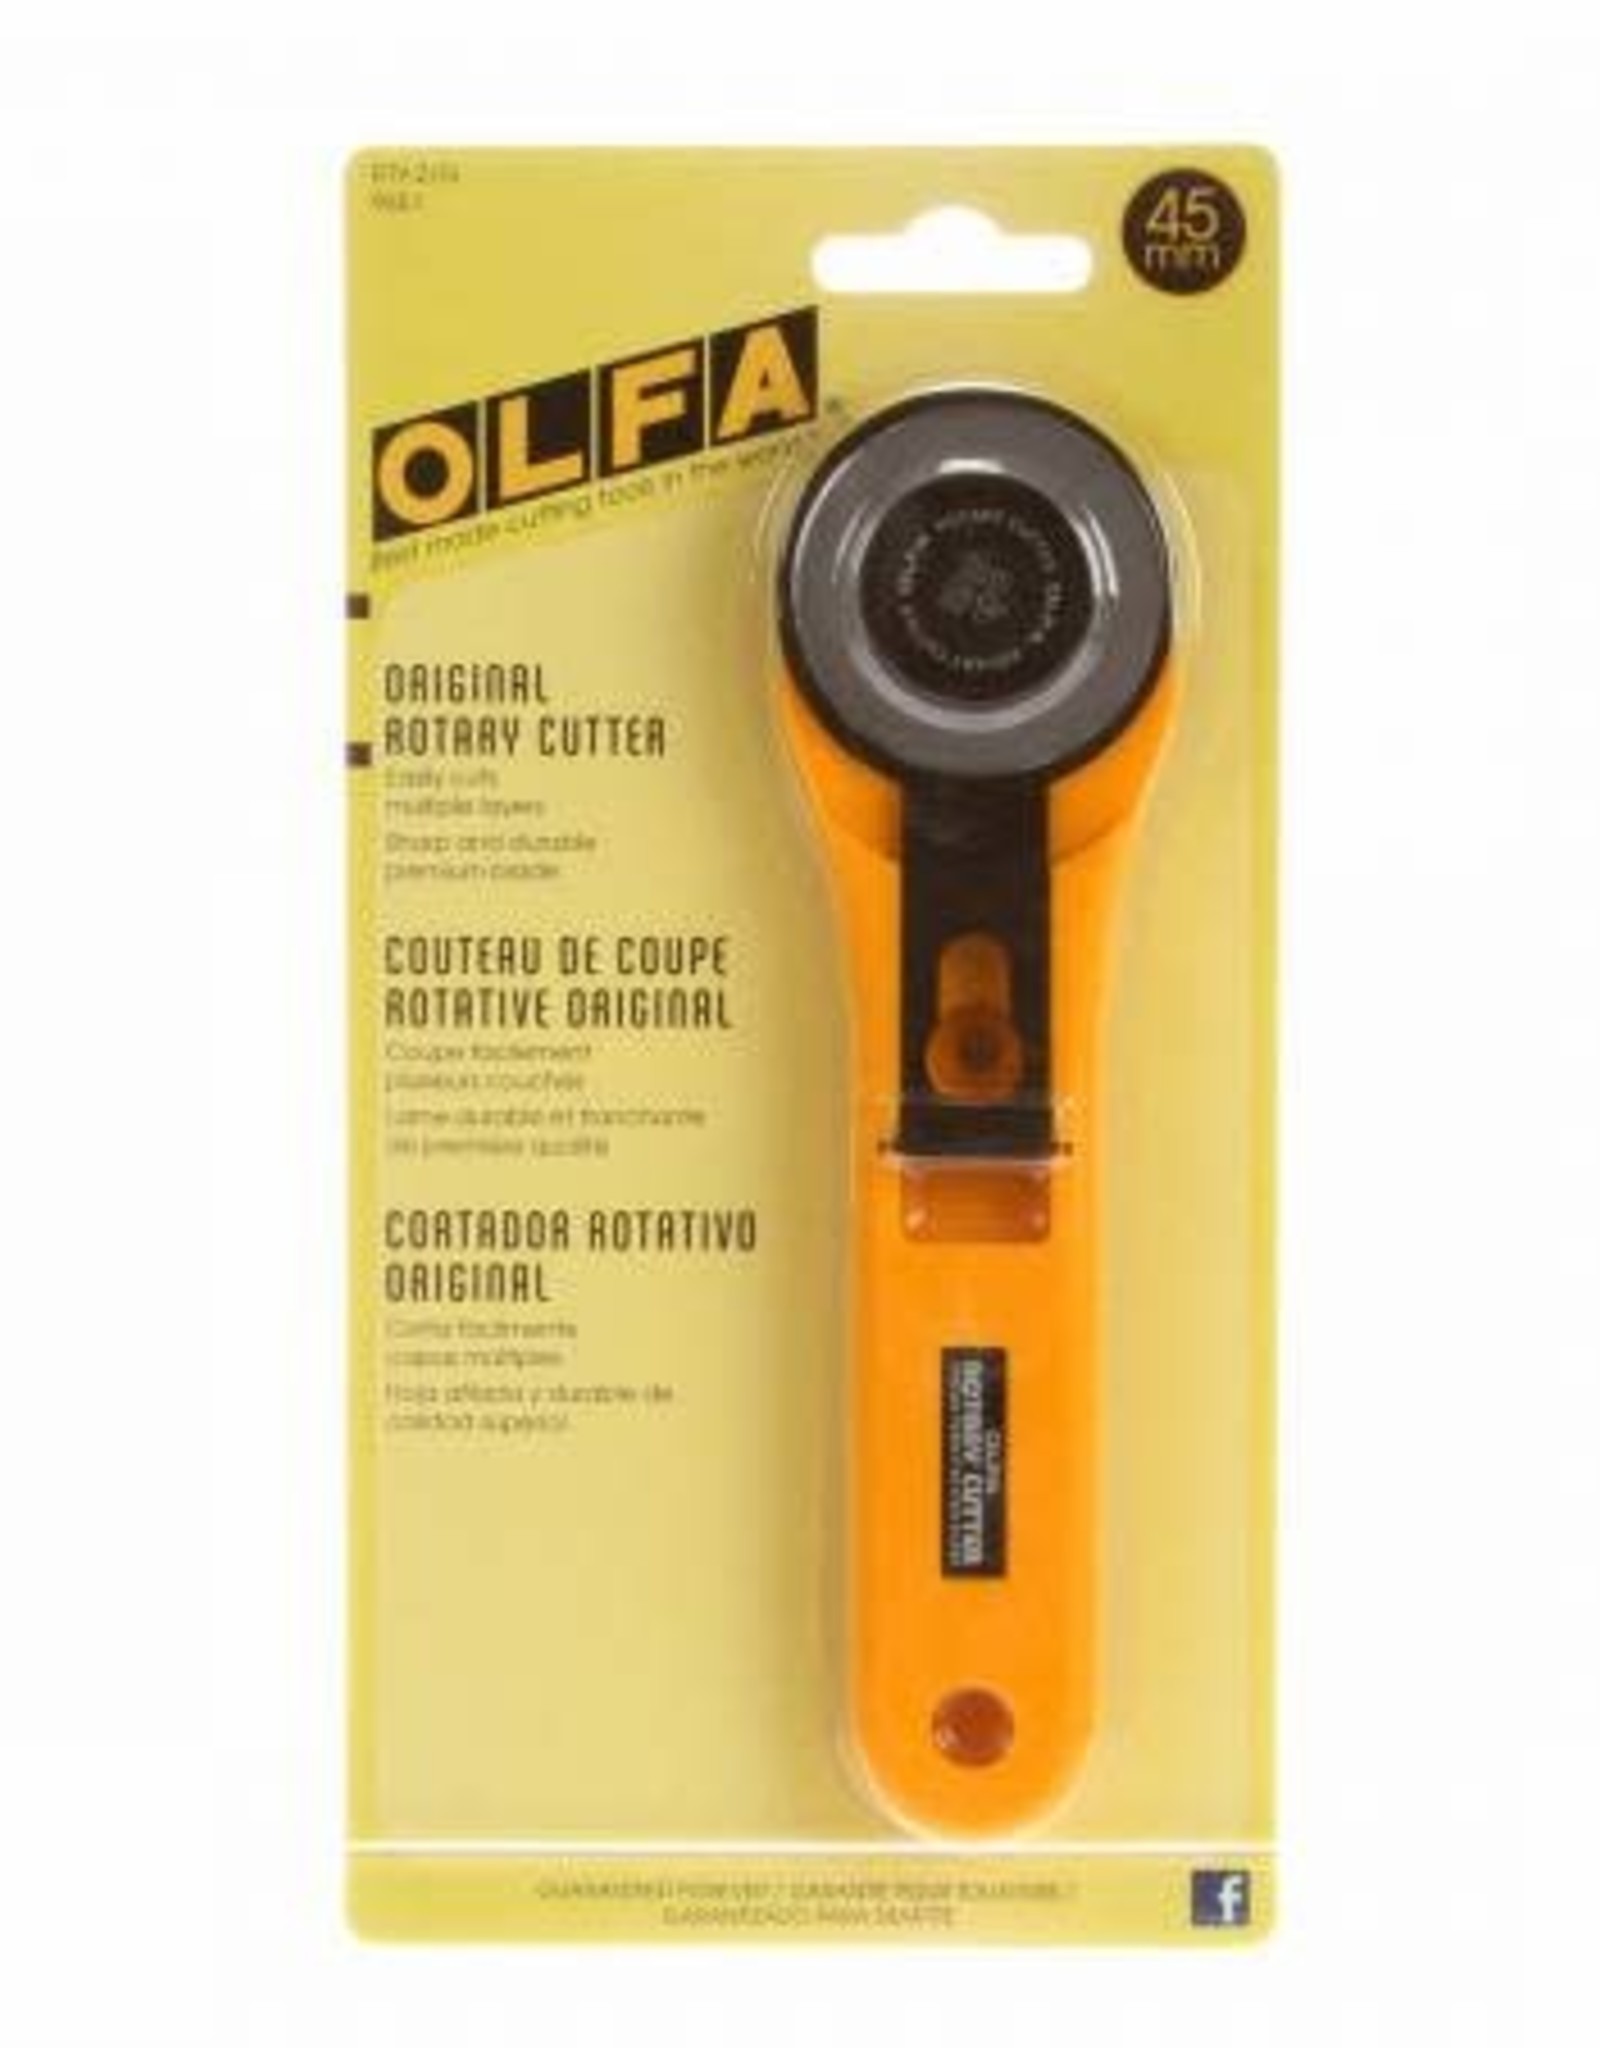 OLFA Olfa 45mm Large Rotary Cutter